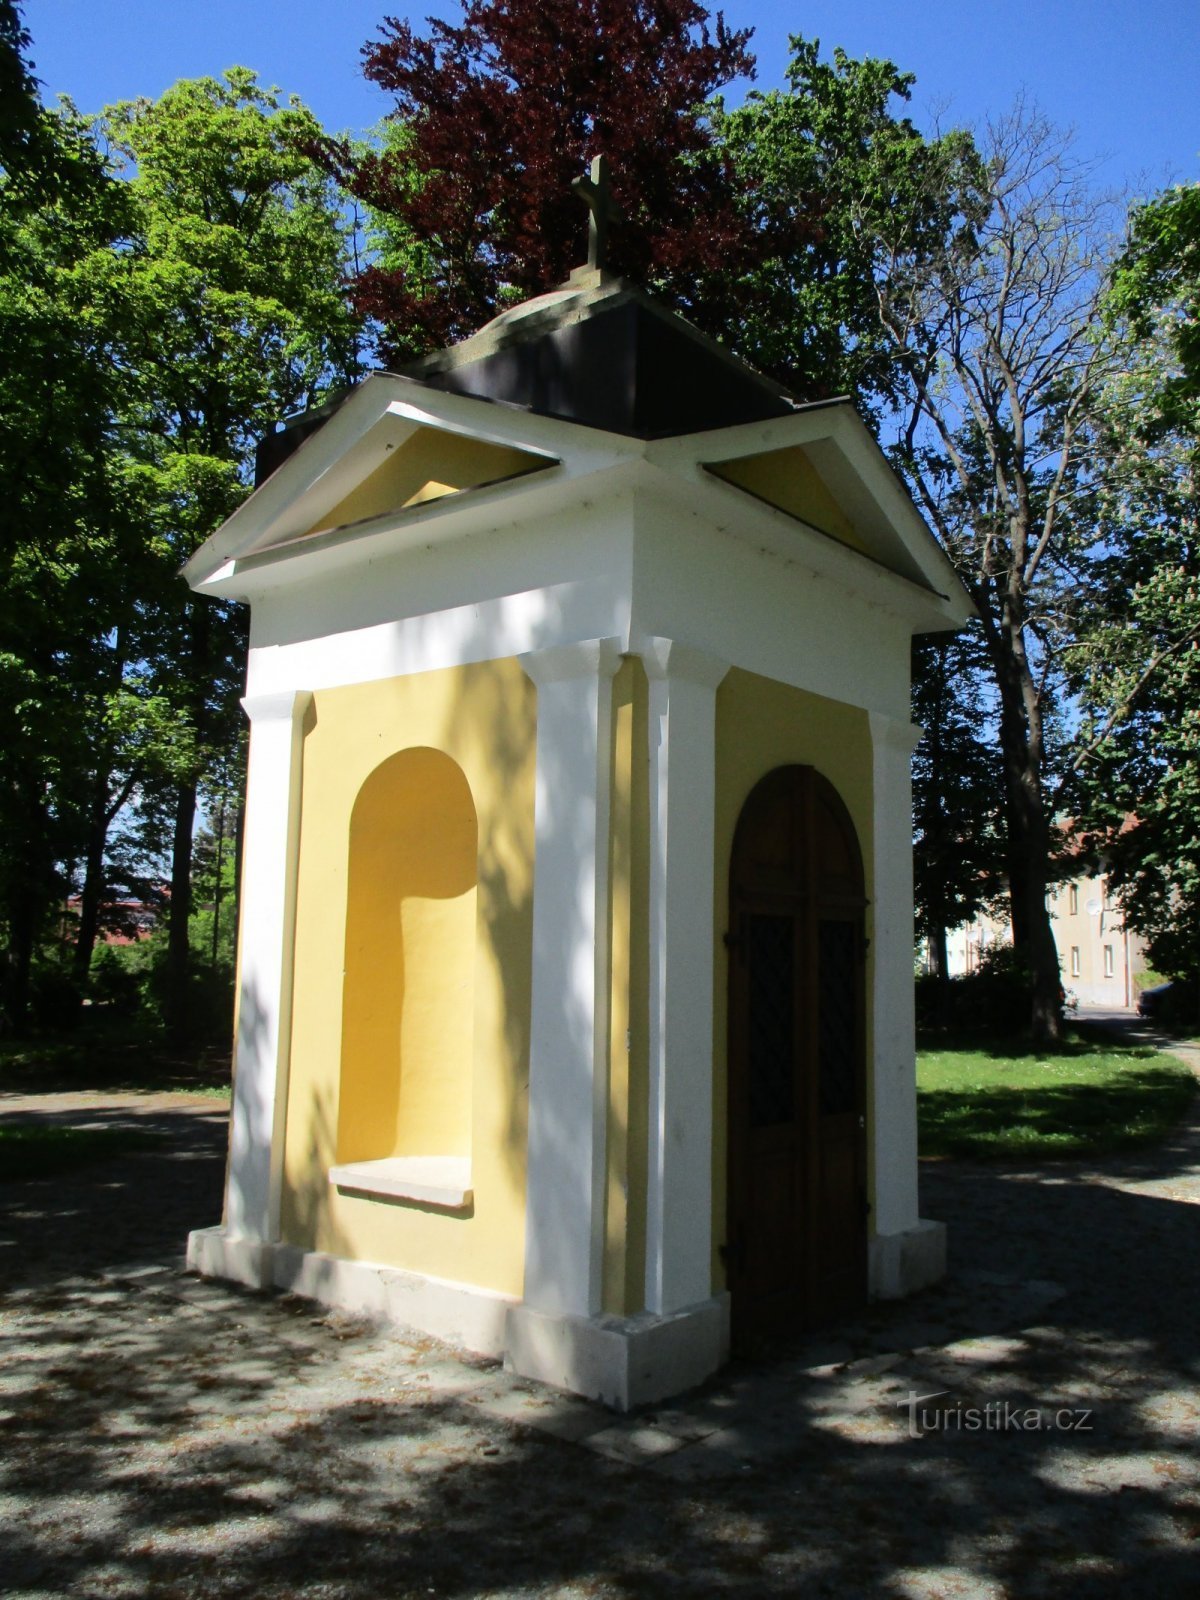 Kapel in Archlebový sady (Dobruška, 18.5.2020/XNUMX/XNUMX)